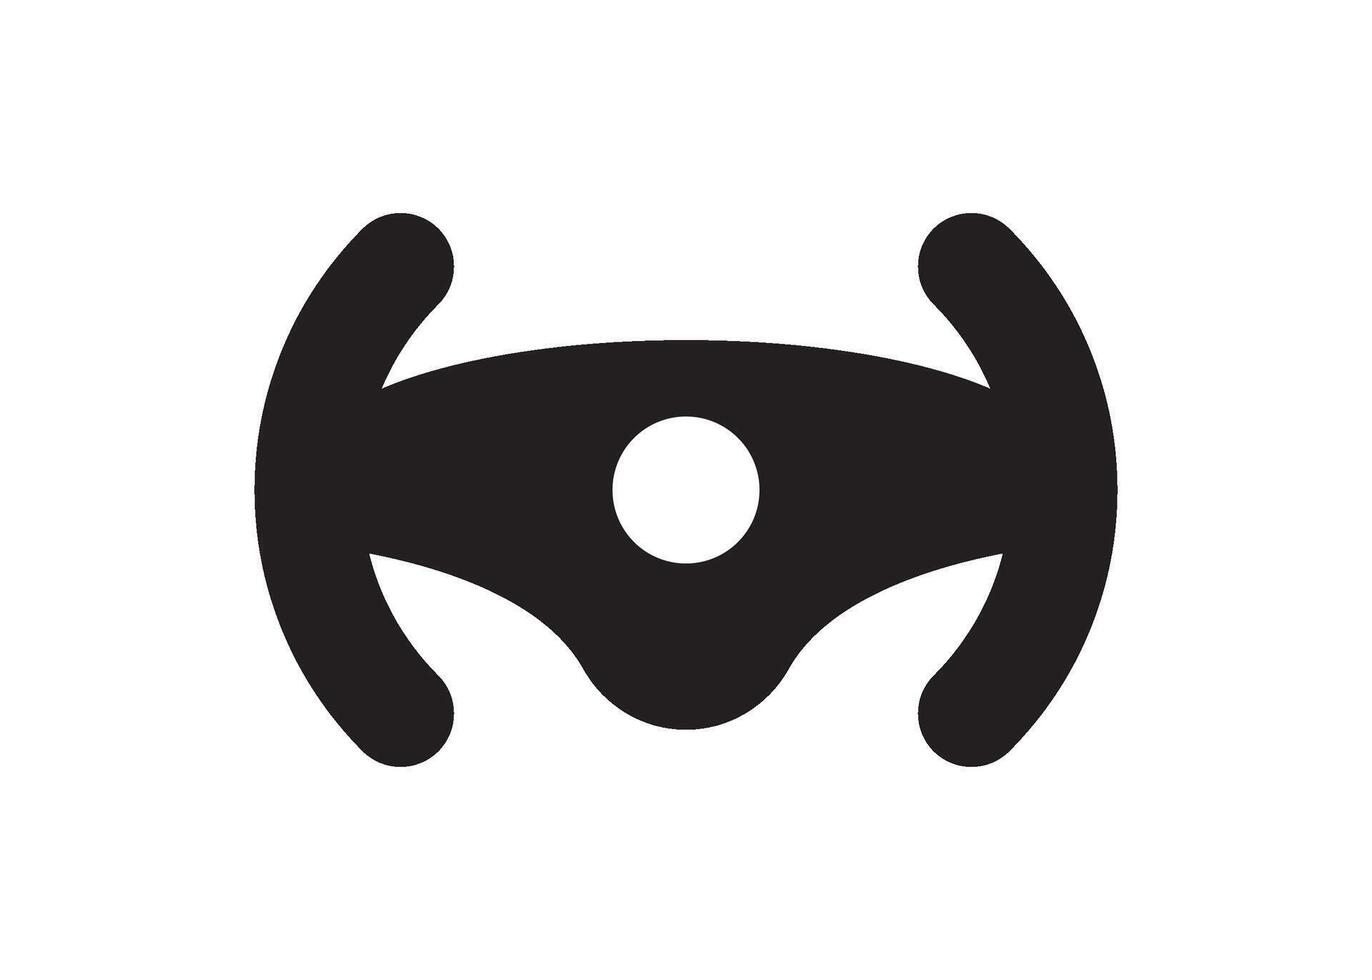 steering wheel icon design vector